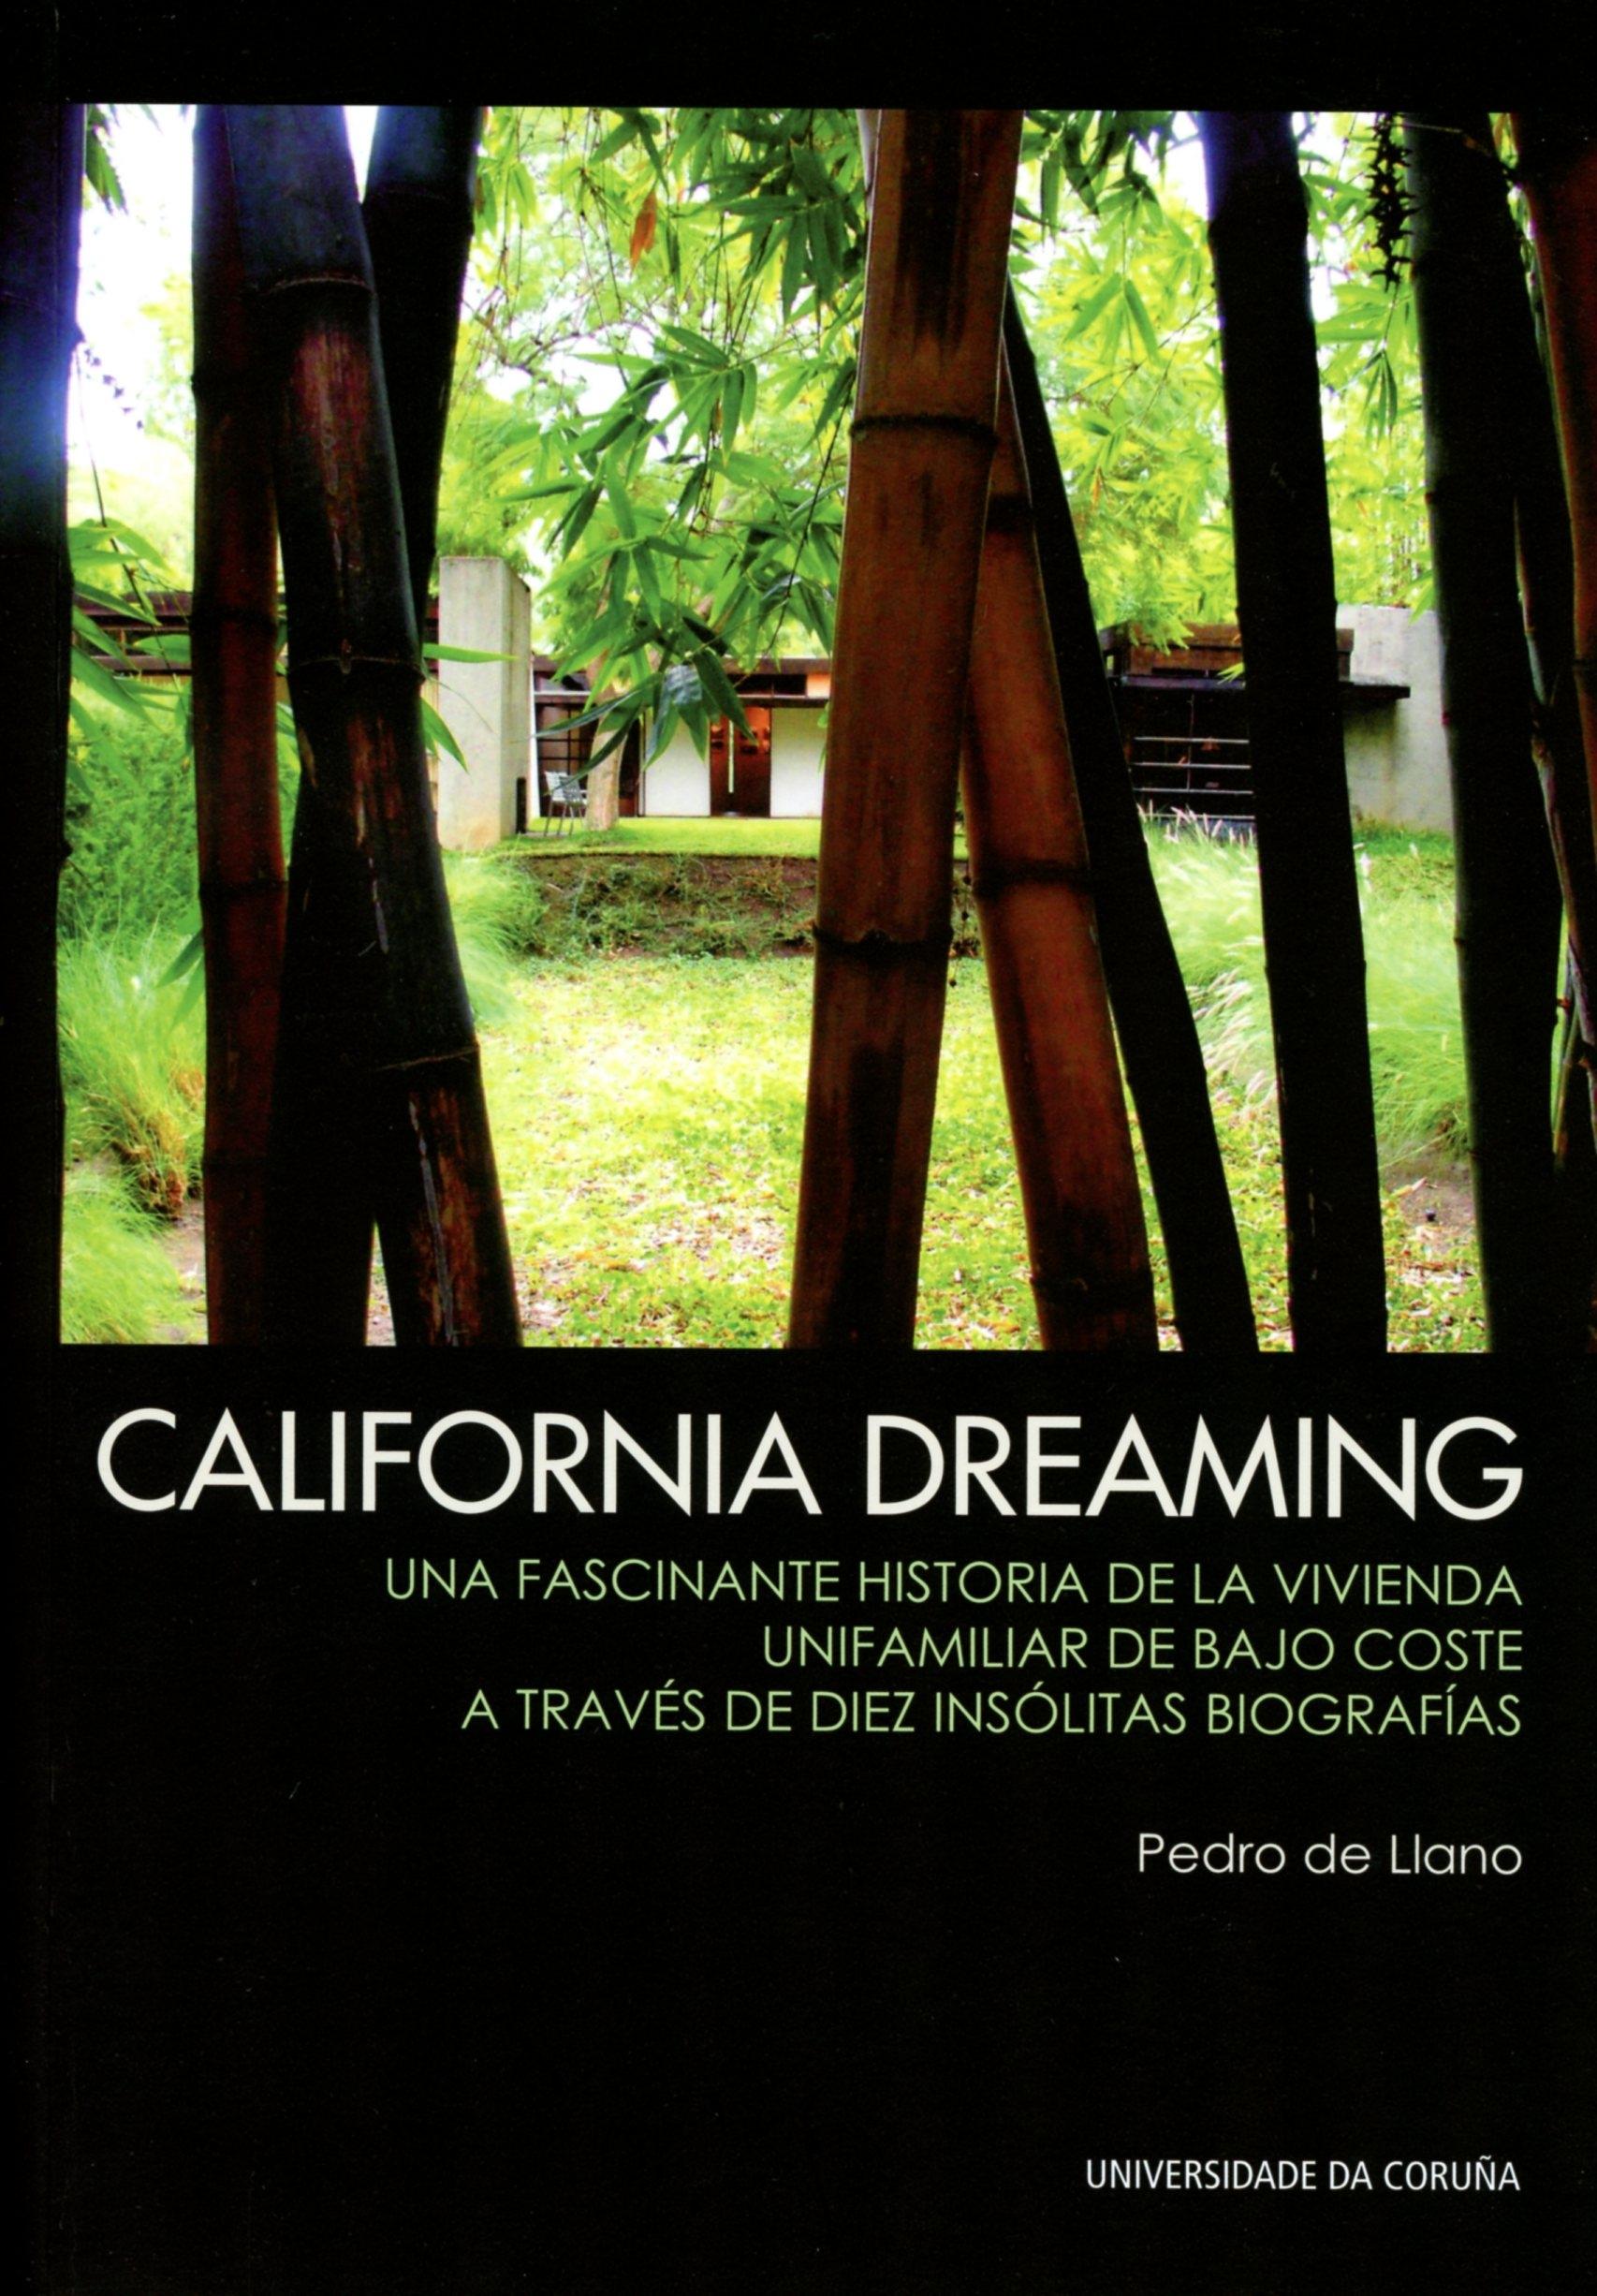 CALIFORNIA DREAMING. UNA FASCINANTE HISTORIA DE LA VIVIENDA UNIFAMILIAR DE BAJO COSTE "A TRAVES DE DIEZ INSOLITAS BIOGRAFIAS". 